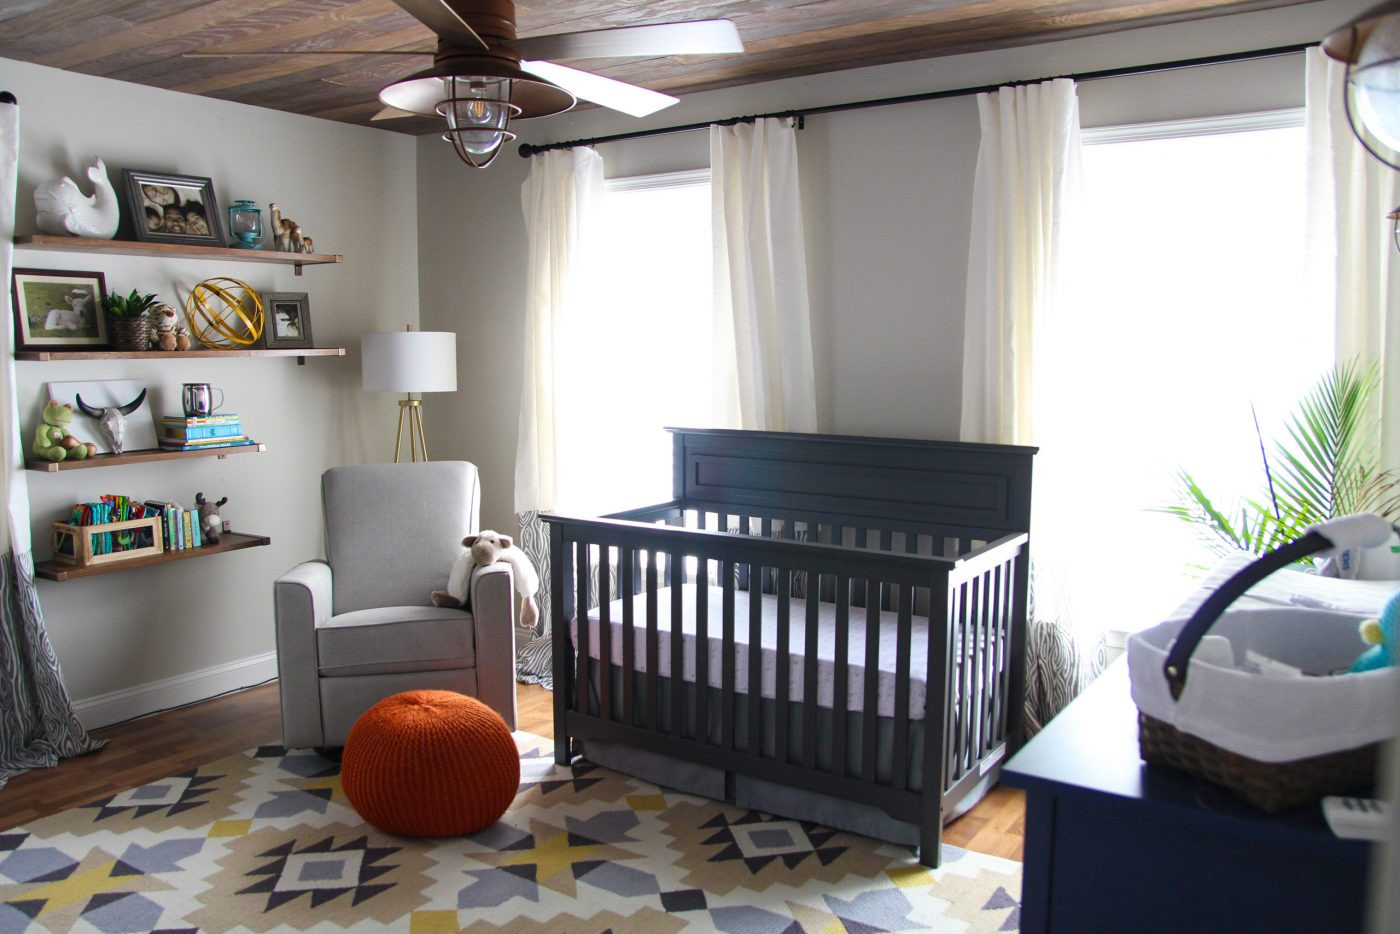 DIY Boy Room Decor Pinterest
 Woodland Nursery Decor A Rustic Retreat for a Baby Boy